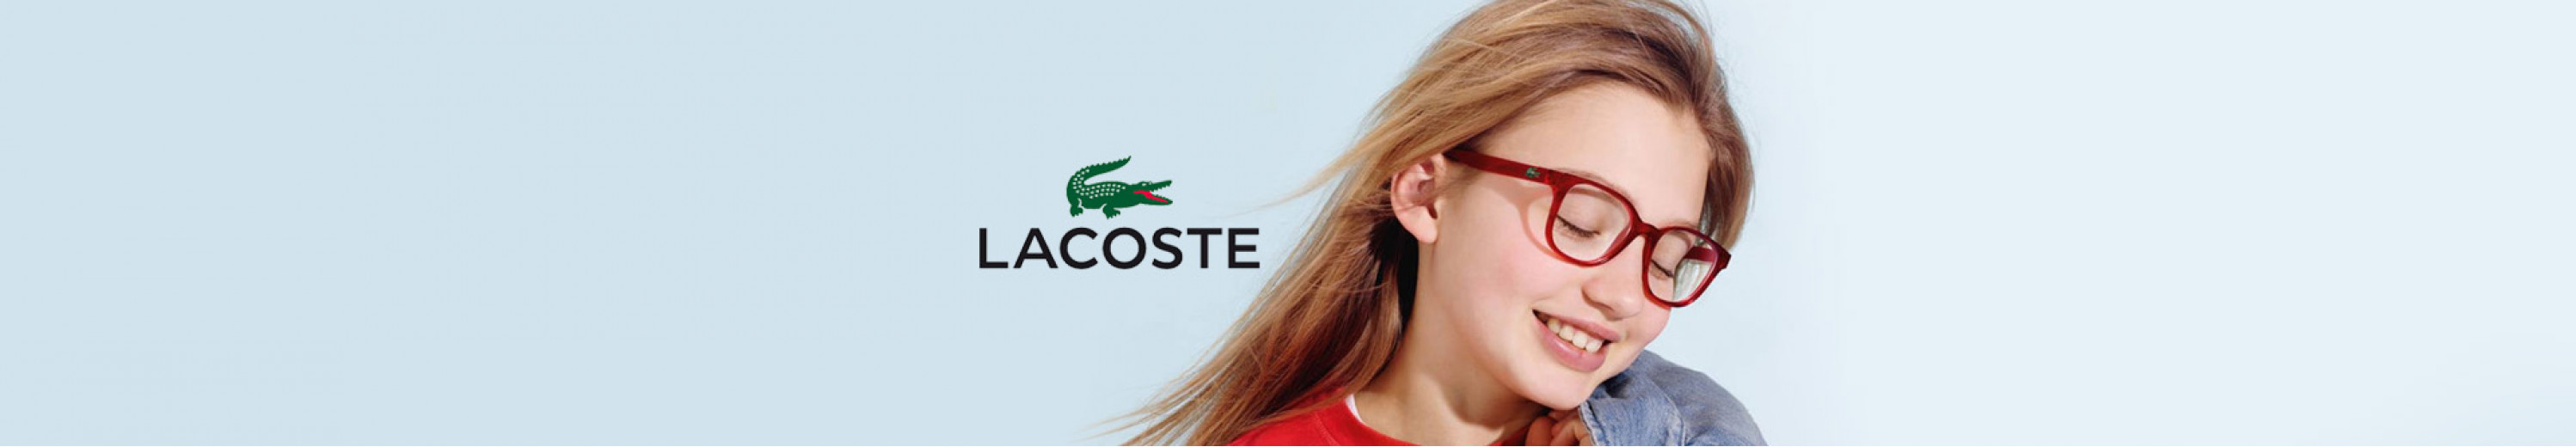 Lacoste Eyeglasses for Kids